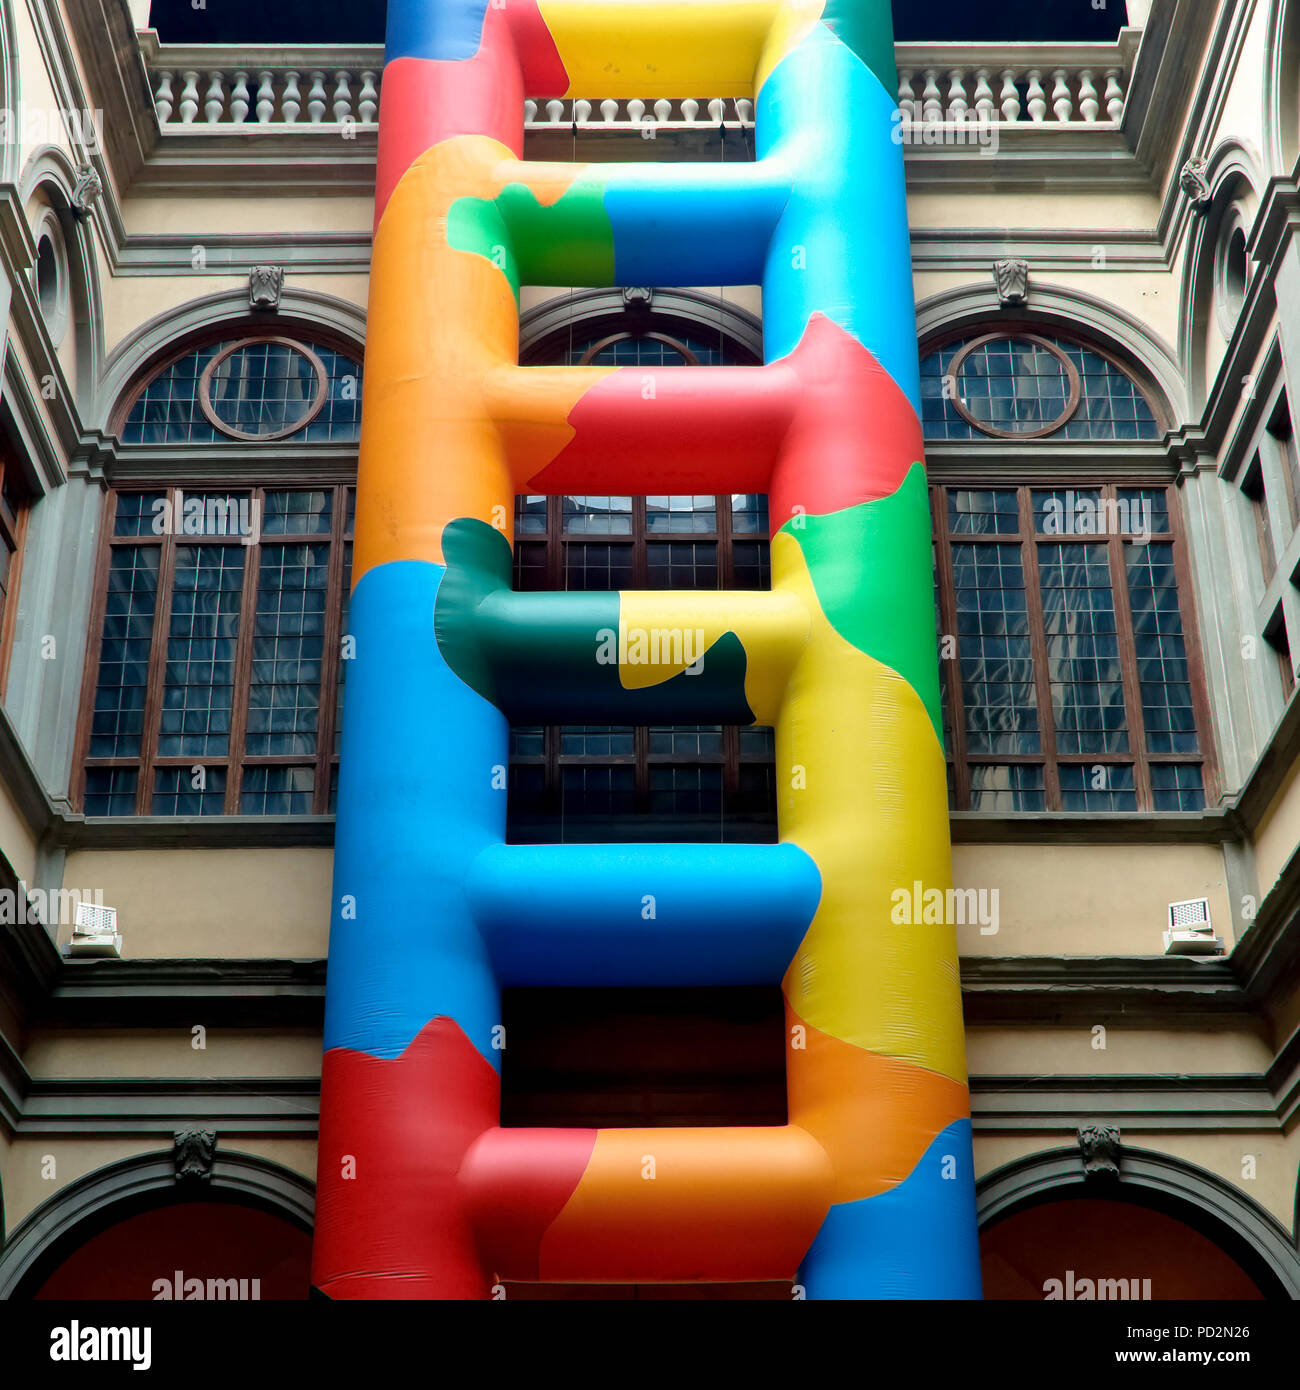 Installazione di una scala gonfiabile colorata nel cortile interno del Palazzo Strozzi, edificio in stile rinascimentale. Firenze, Italia, Europa. Foto Stock